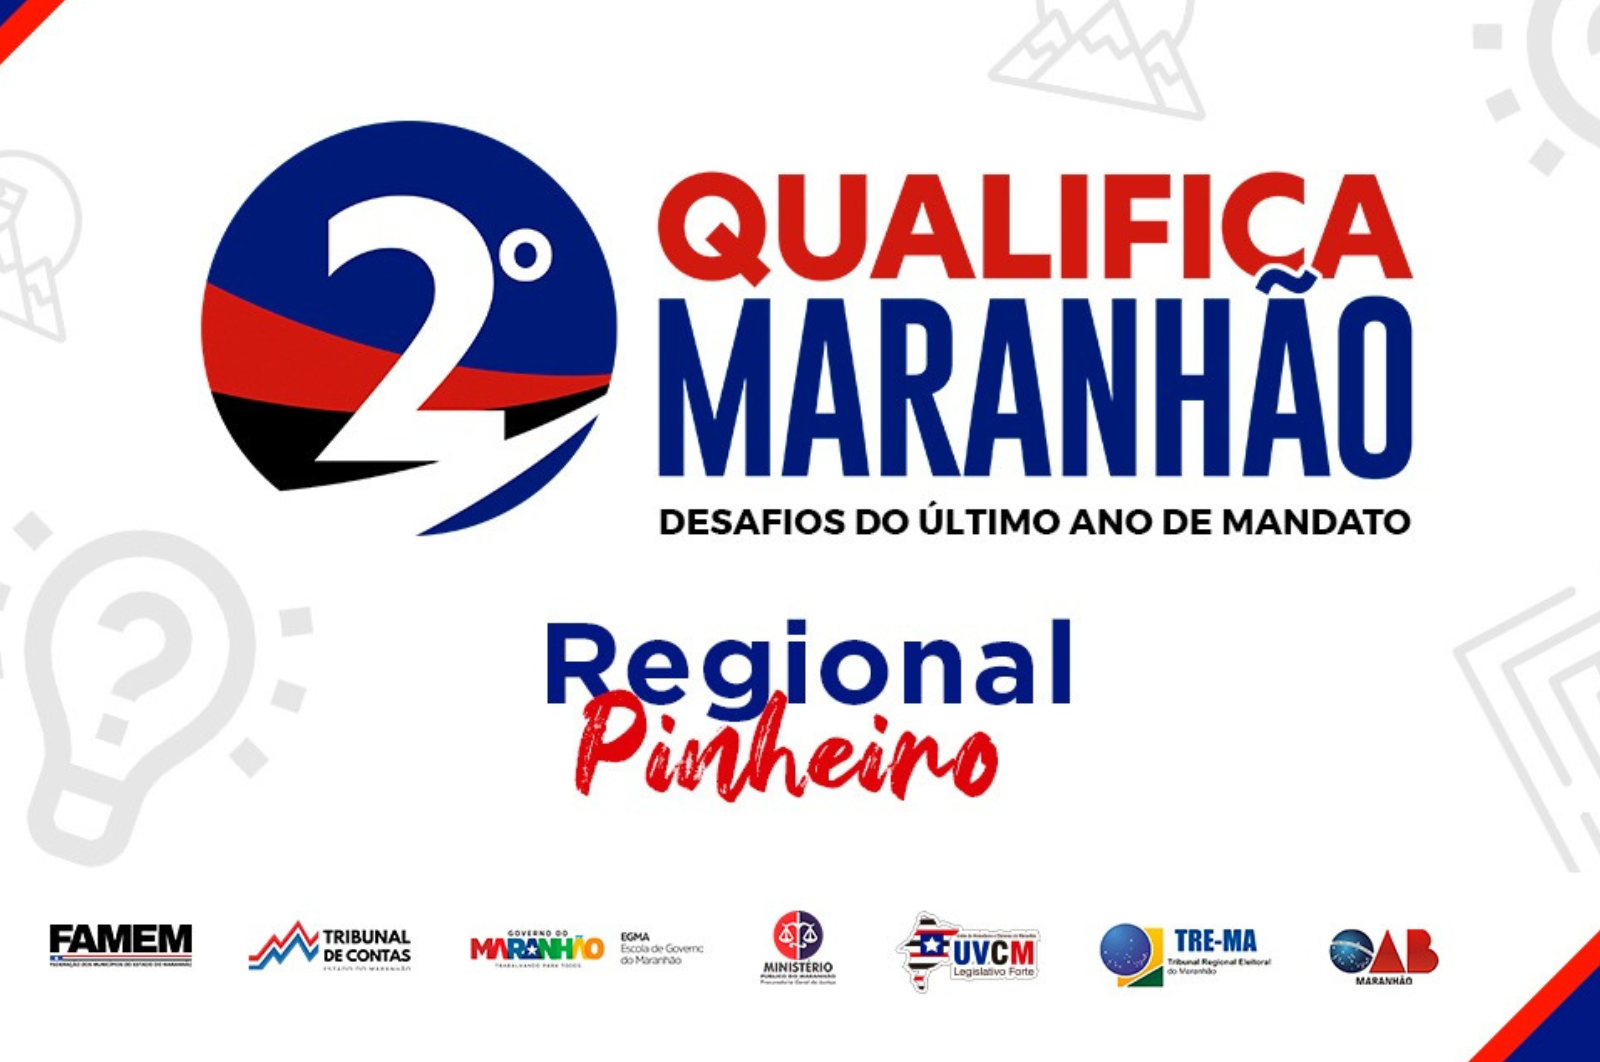 2º Qualifica Maranhão: Desafios do último ano de mandato (Regional Pinheiro)